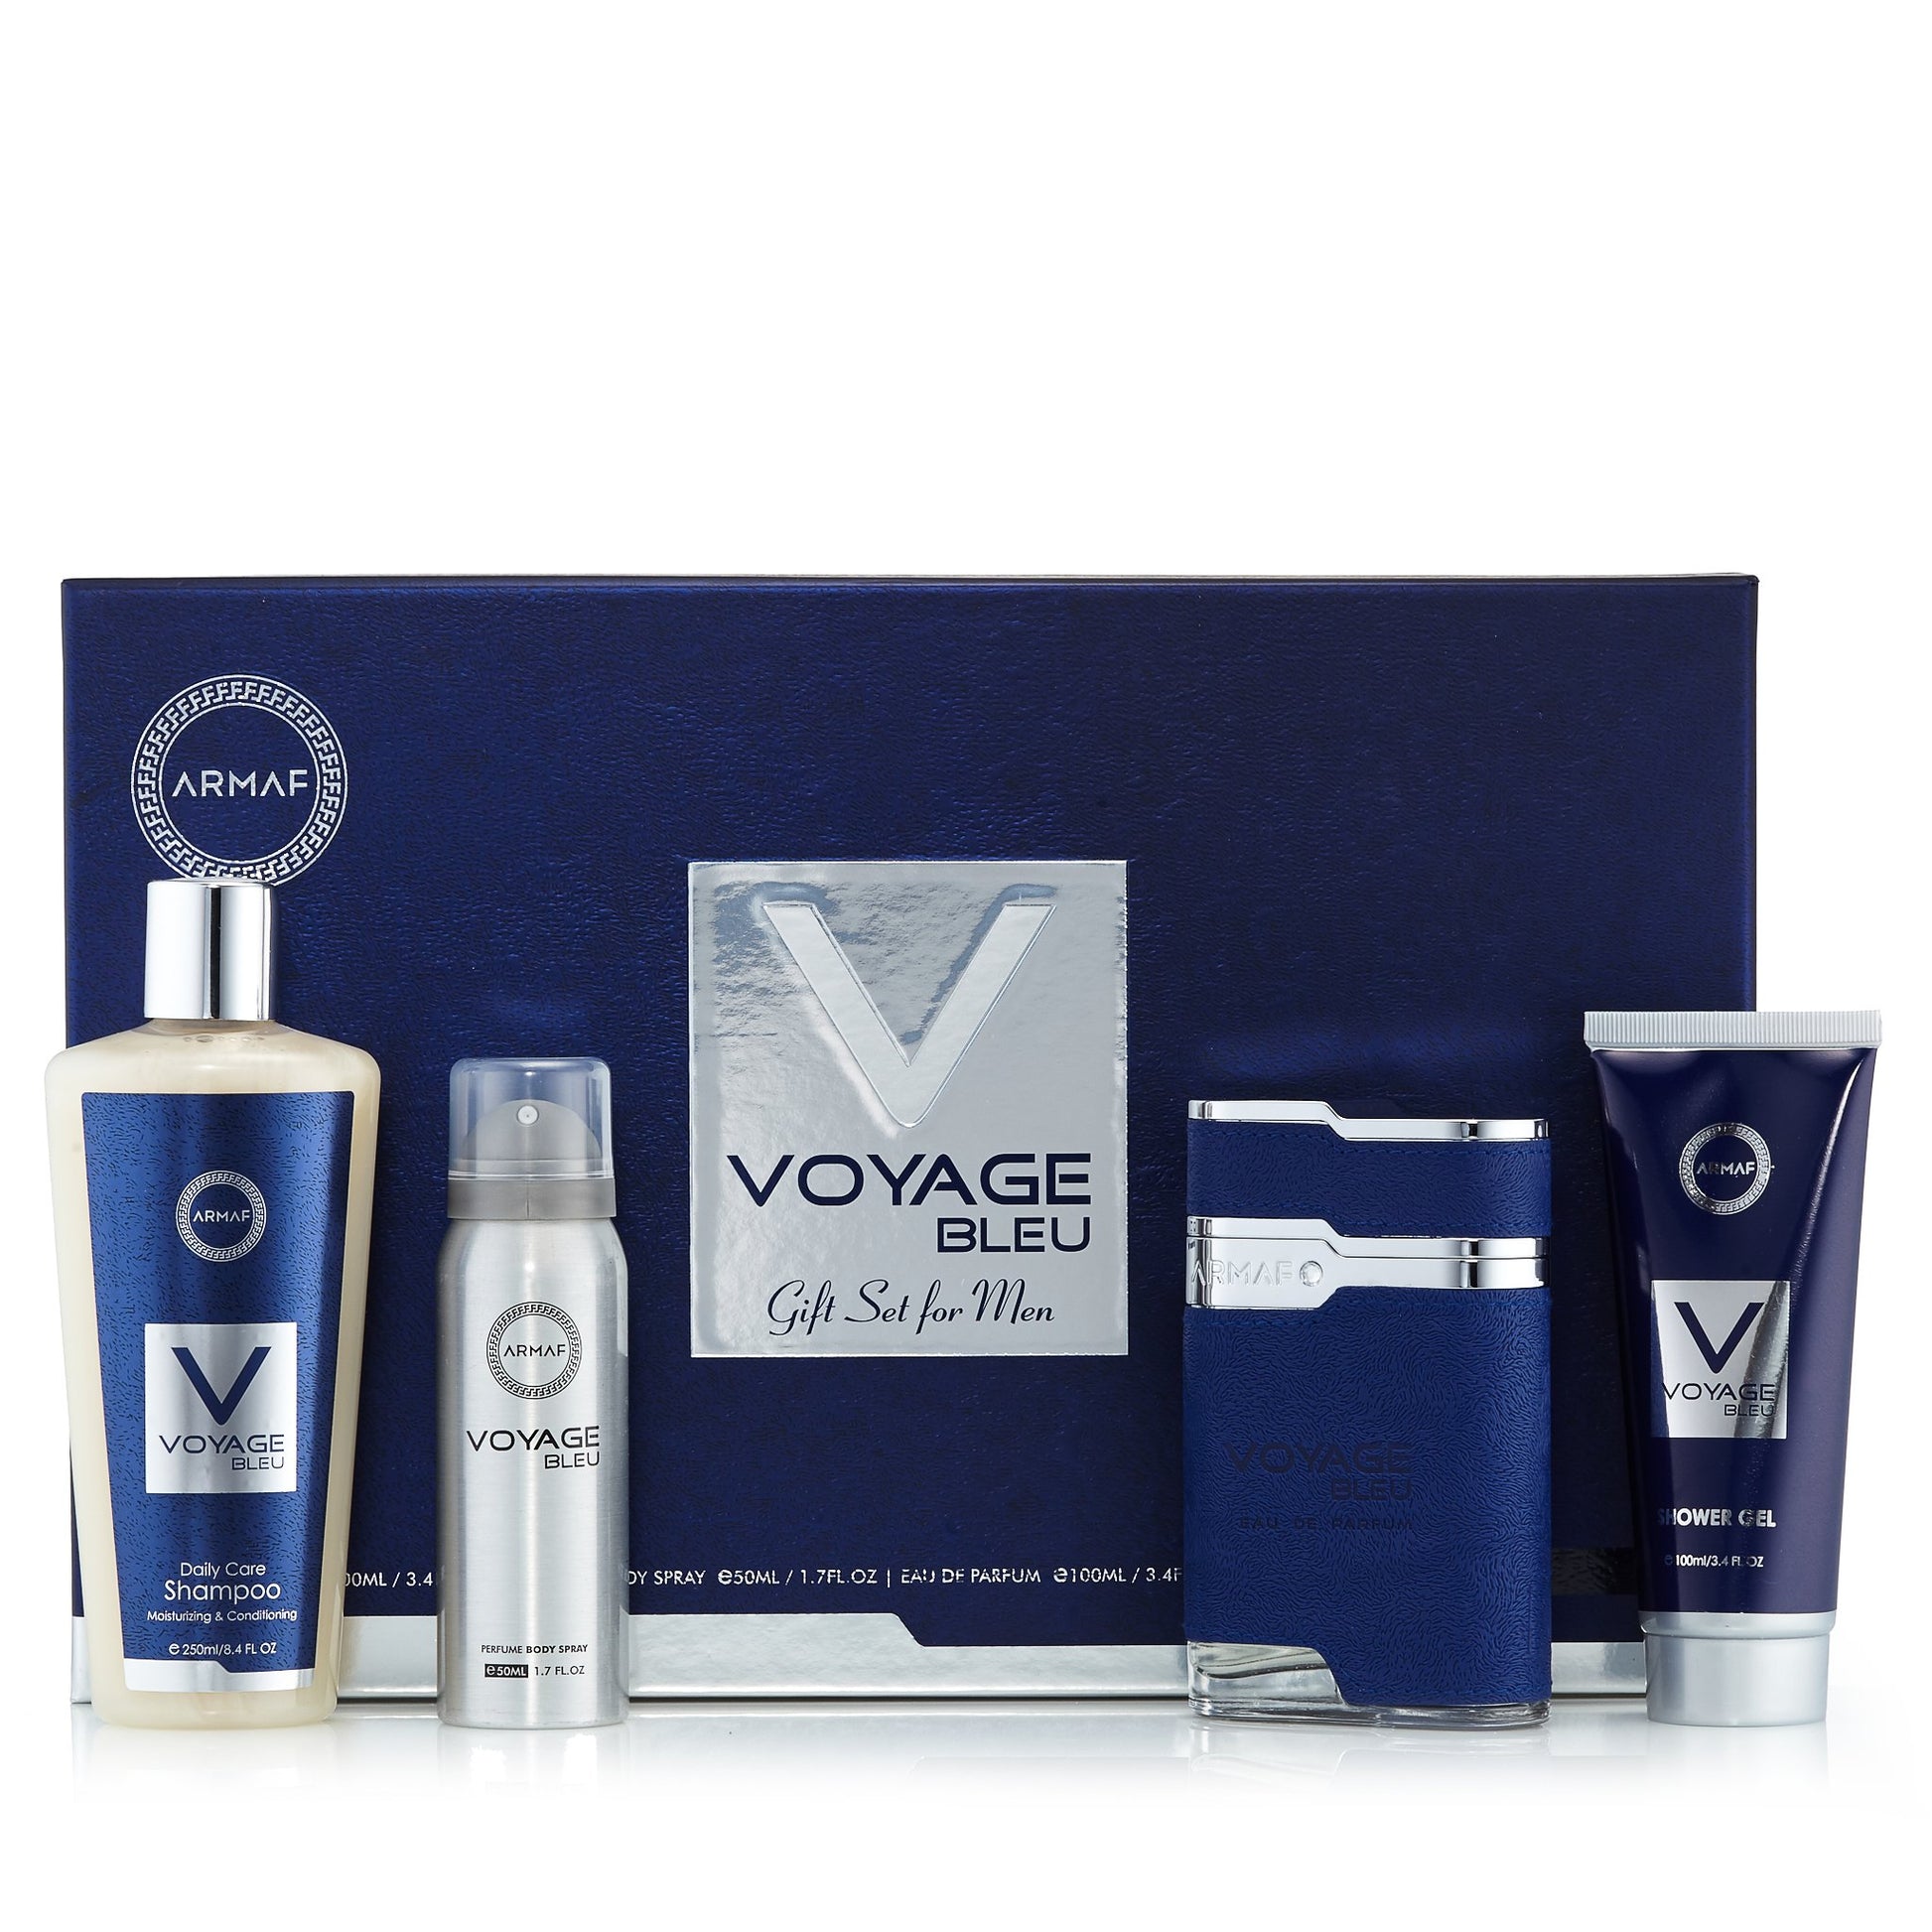 Voyage Bleu Gift Set for Men, Product image 2